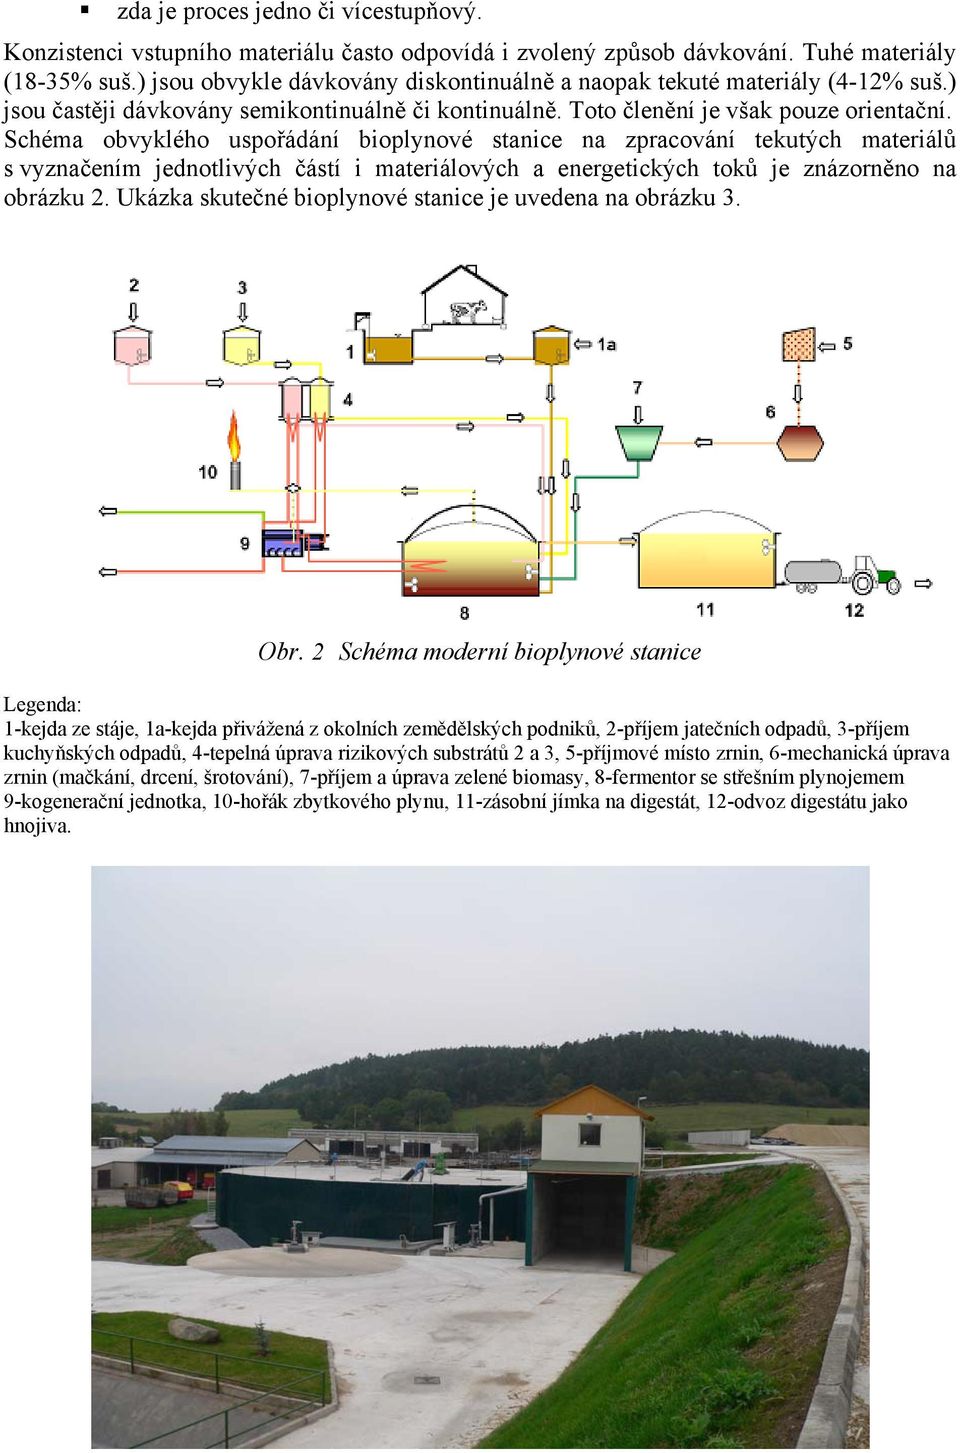 Schéma obvyklého uspořádání bioplynové stanice na zpracování tekutých materiálů s vyznačením jednotlivých částí i materiálových a energetických toků je znázorněno na obrázku 2.